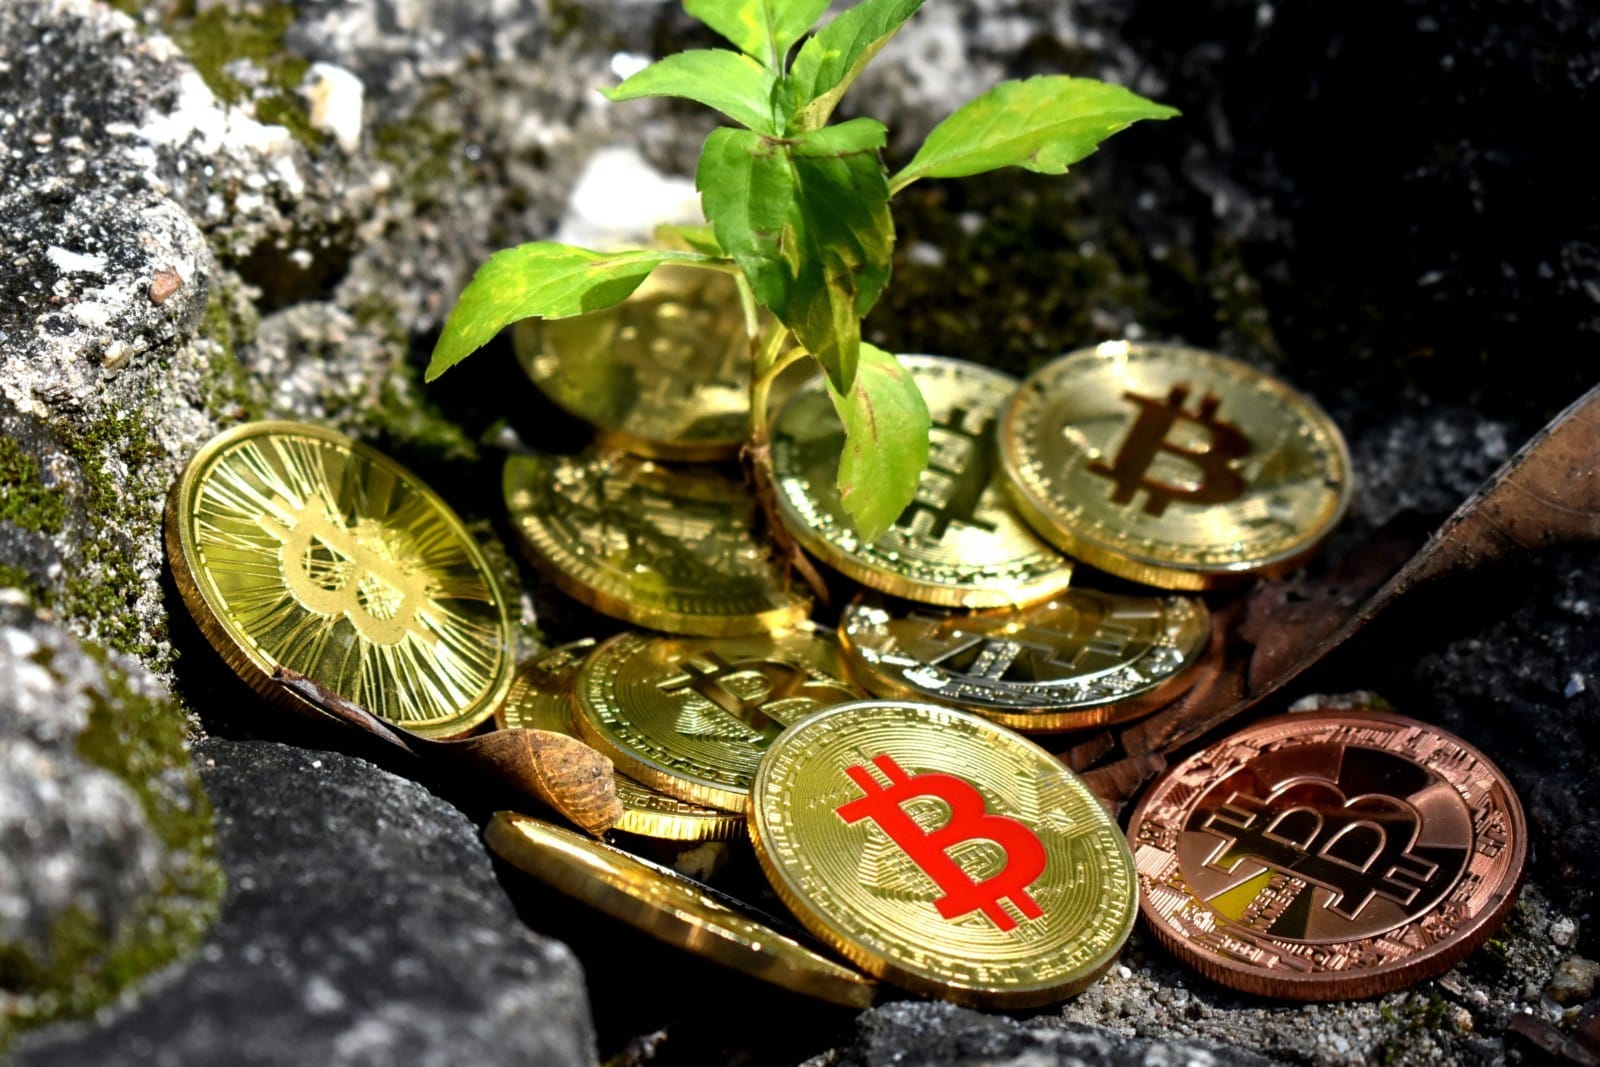 come è il valore di bitcoin determinato